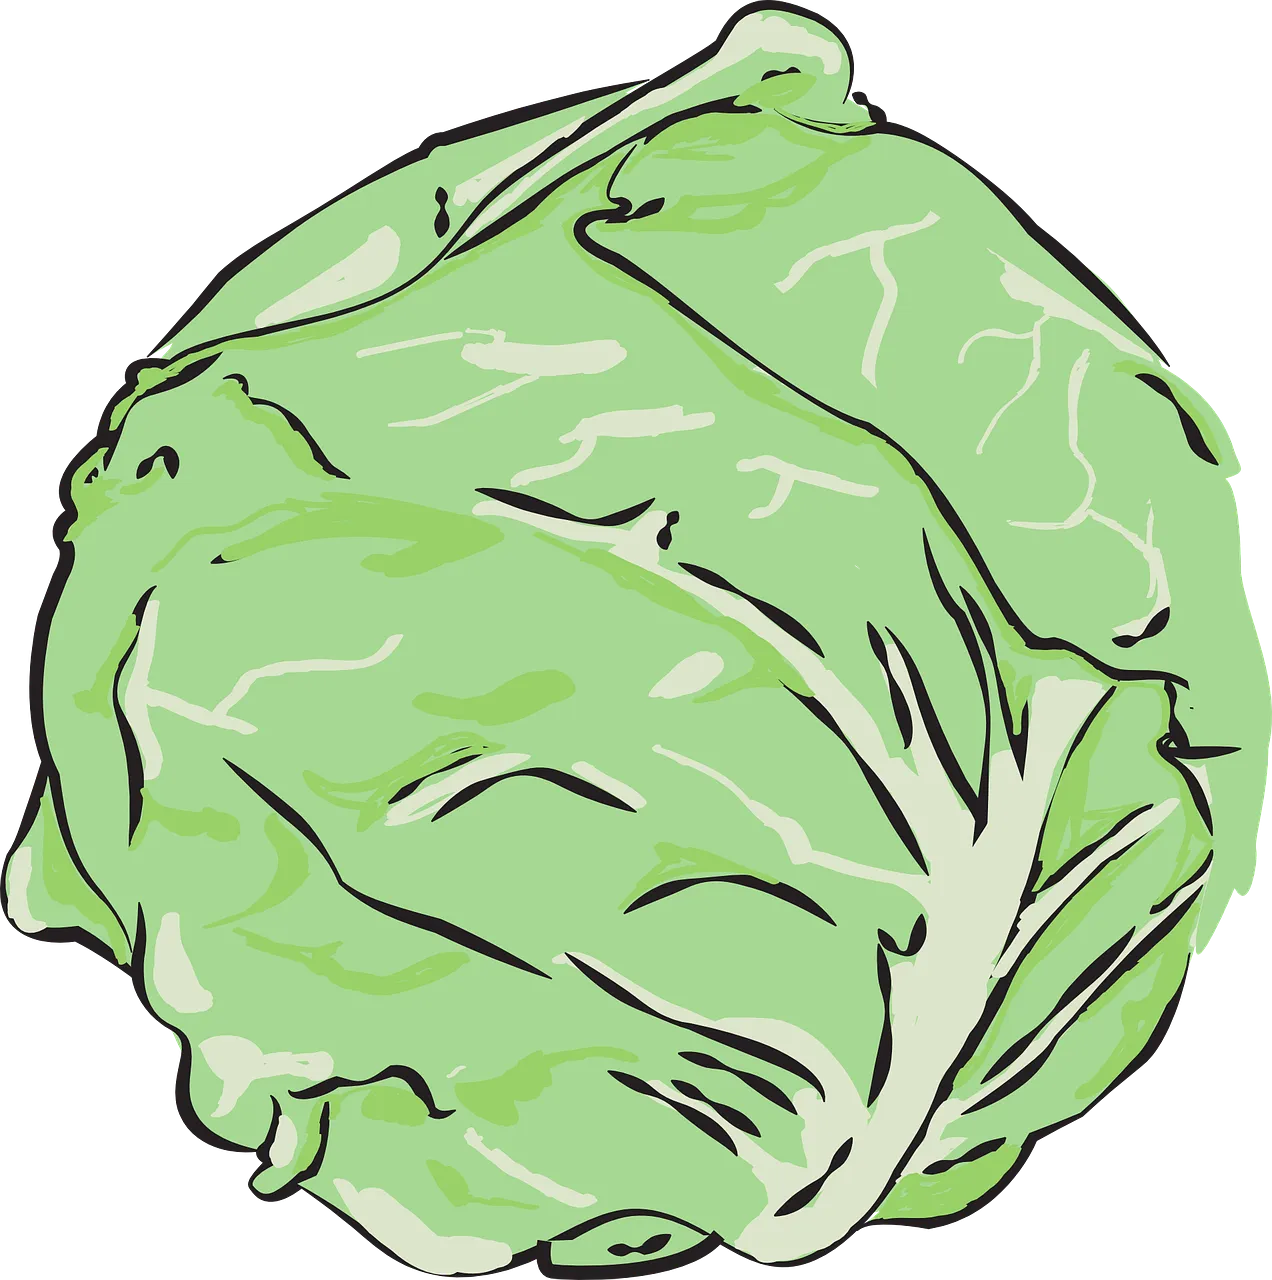 저칼로리 음식 추천 - 양배추